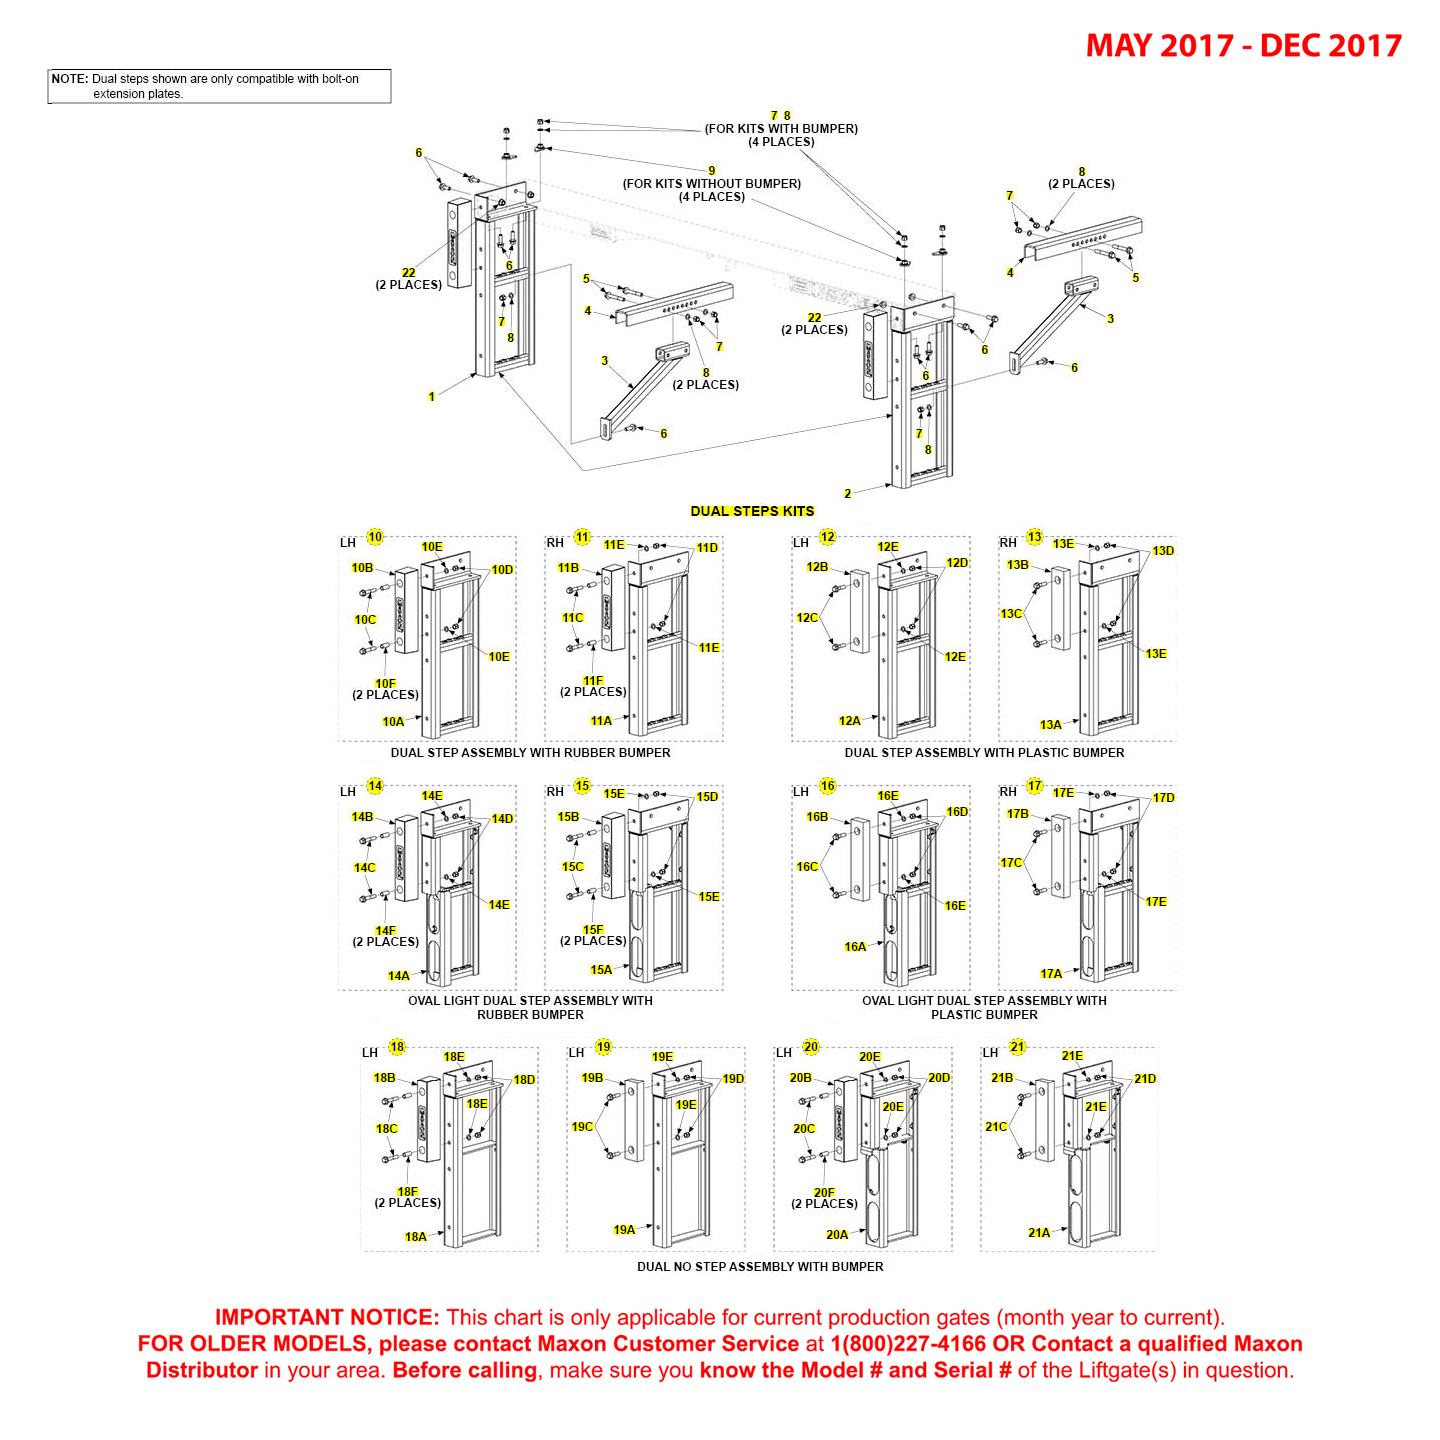 Maxon TE-25 And TE-30 (May 2017 - Dec 2017) Dual Step Kit Diagram